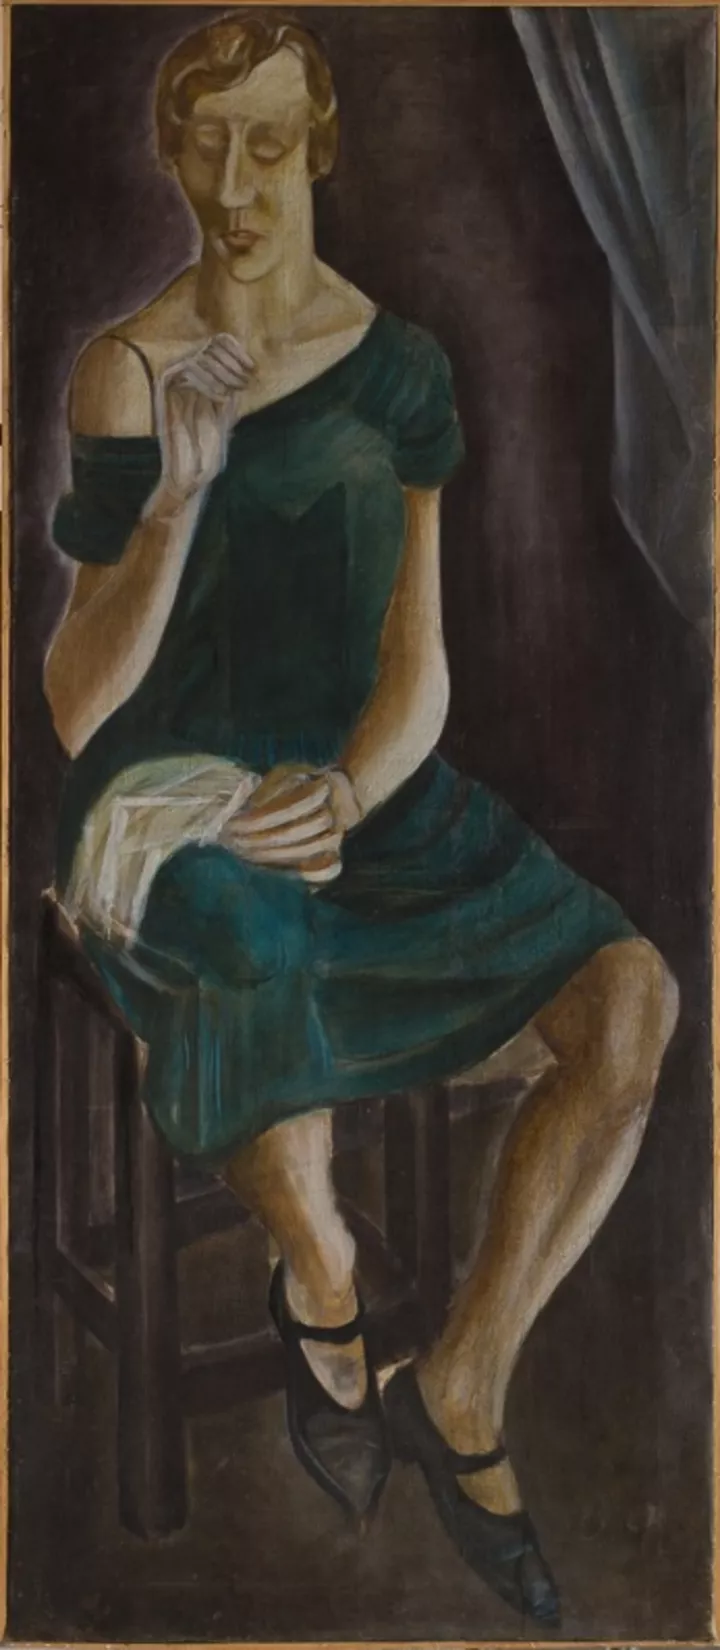 Автор неизвестен, "Женский портрет". Конец 1920-х – начало 1930-х гг.